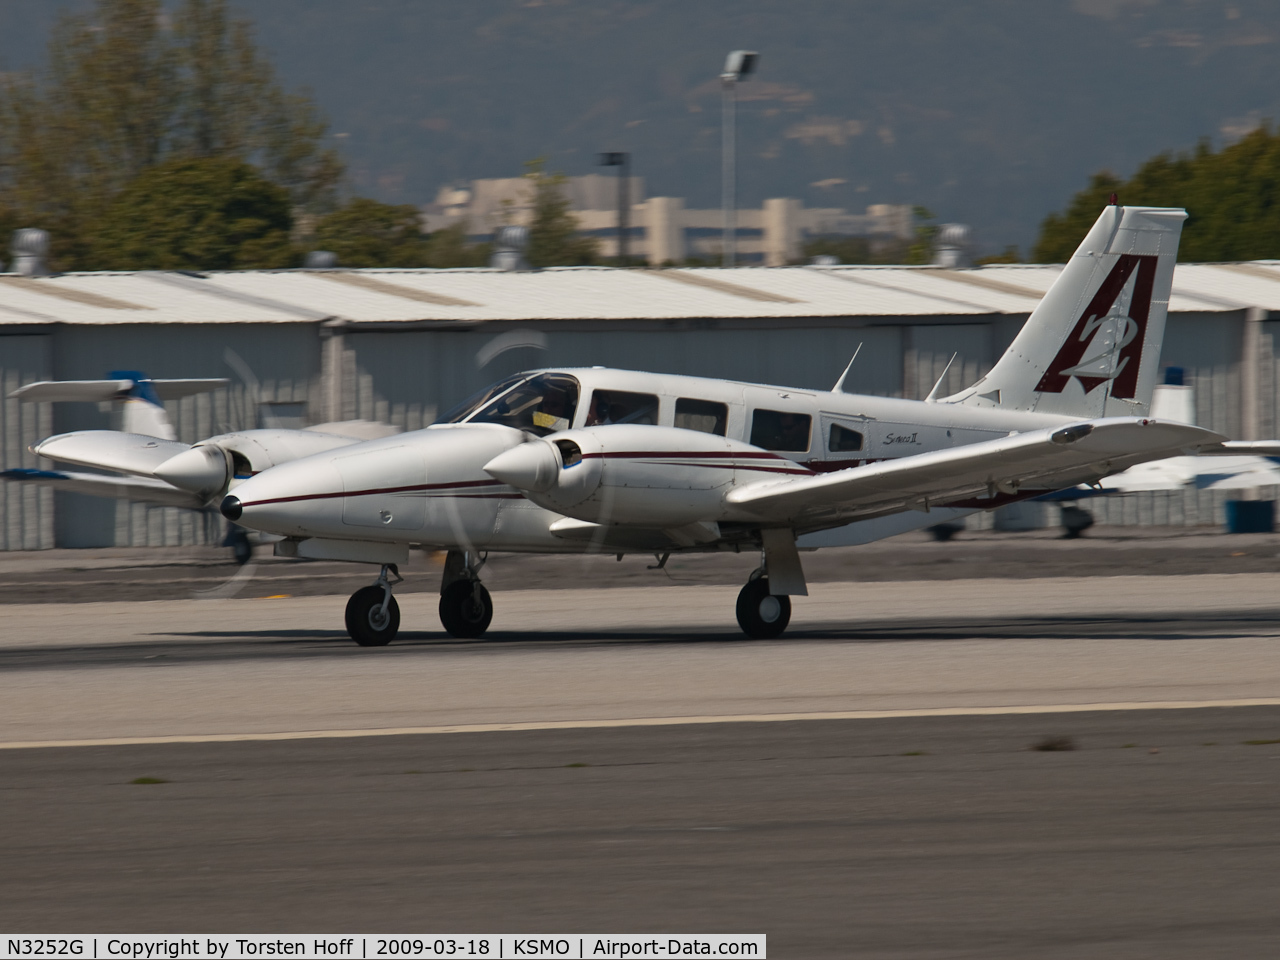 N3252G, Piper PA-34-200T C/N 34-8070316, N3252G departing from RWY 21